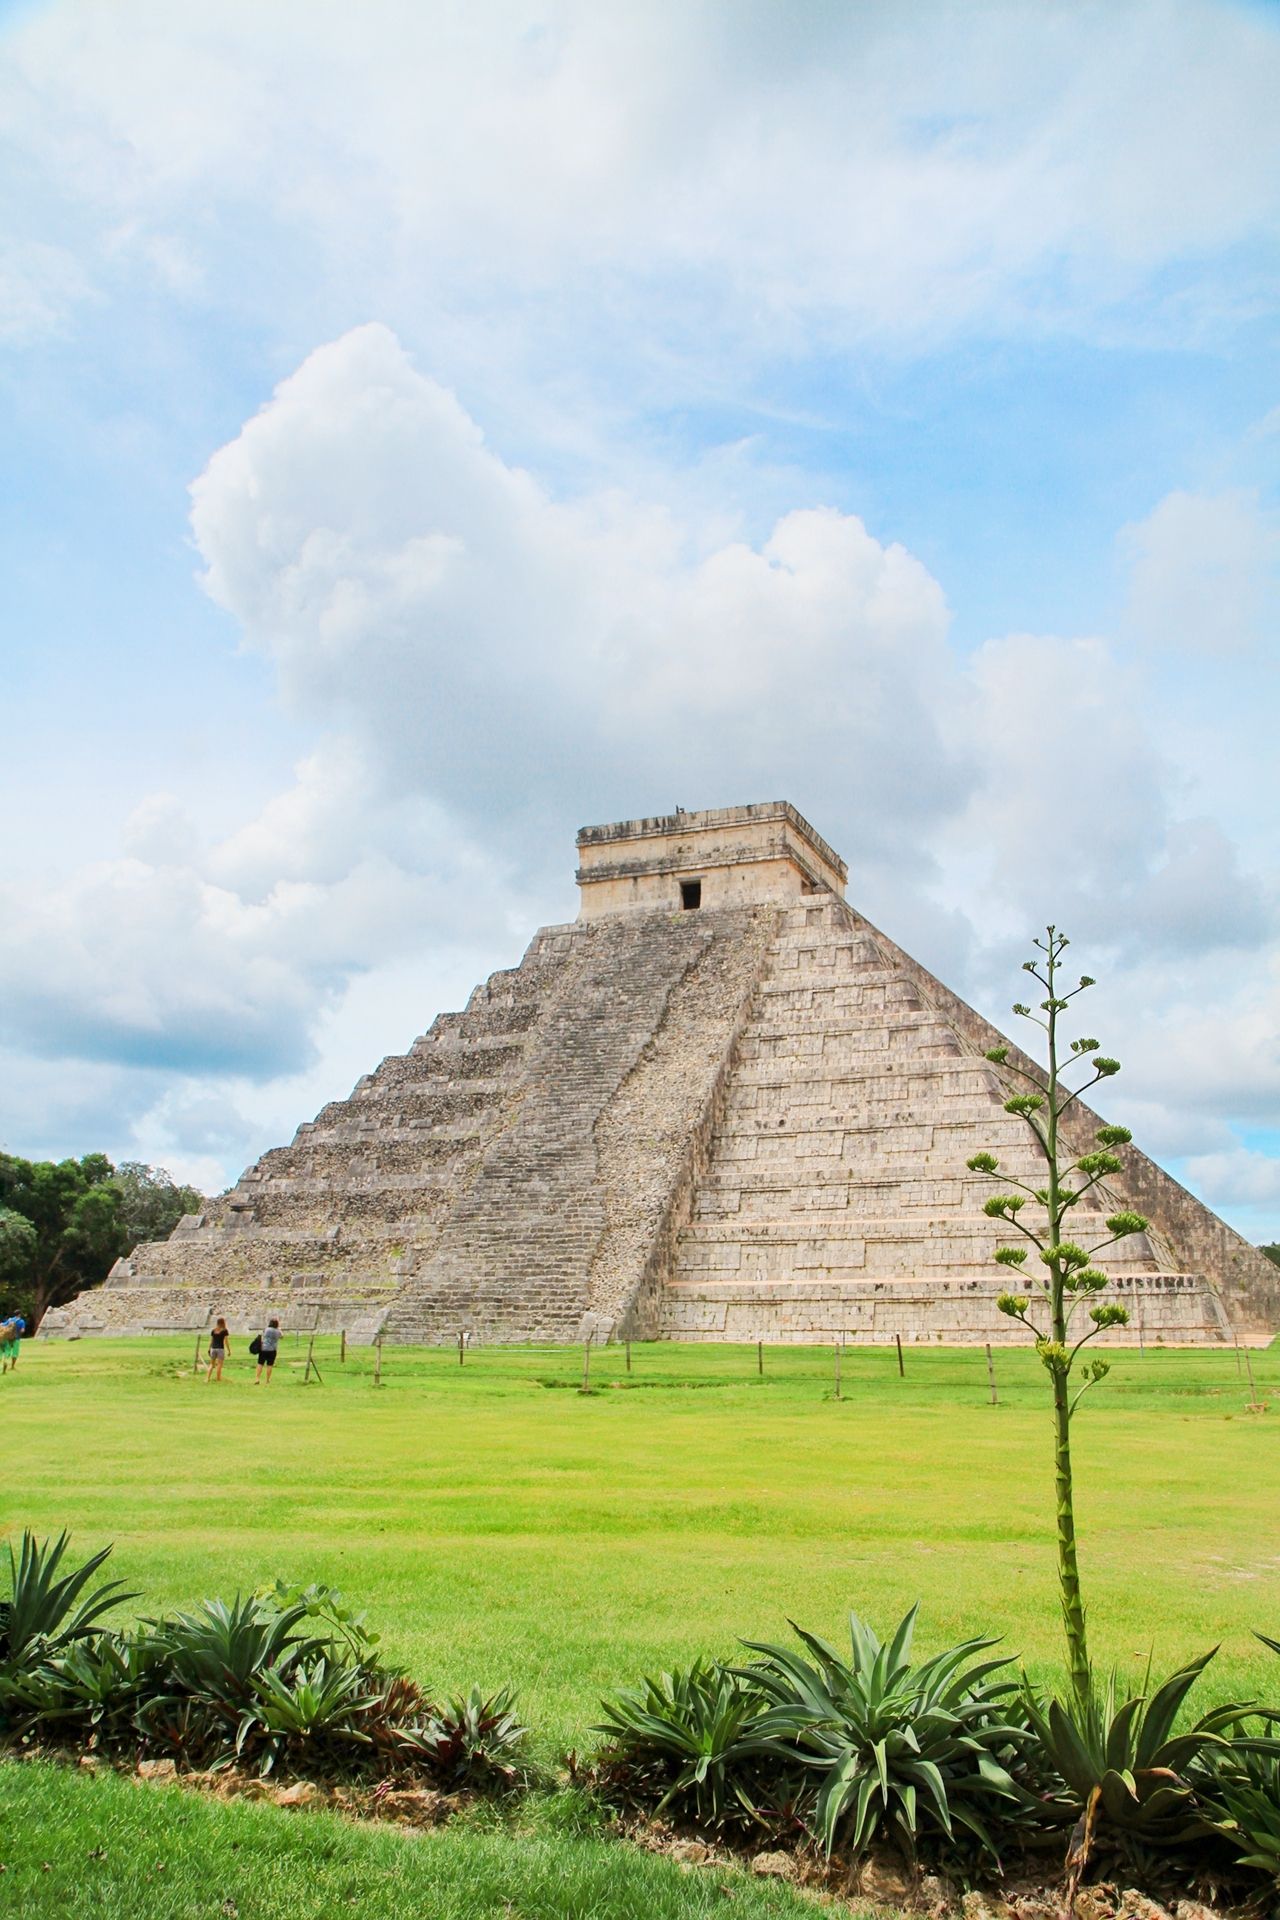 羽蛇神金字塔是玛雅遗址中最有名的一座金字塔，也是最高的一座，被称为世界第七大奇迹。金字塔上有十分神秘